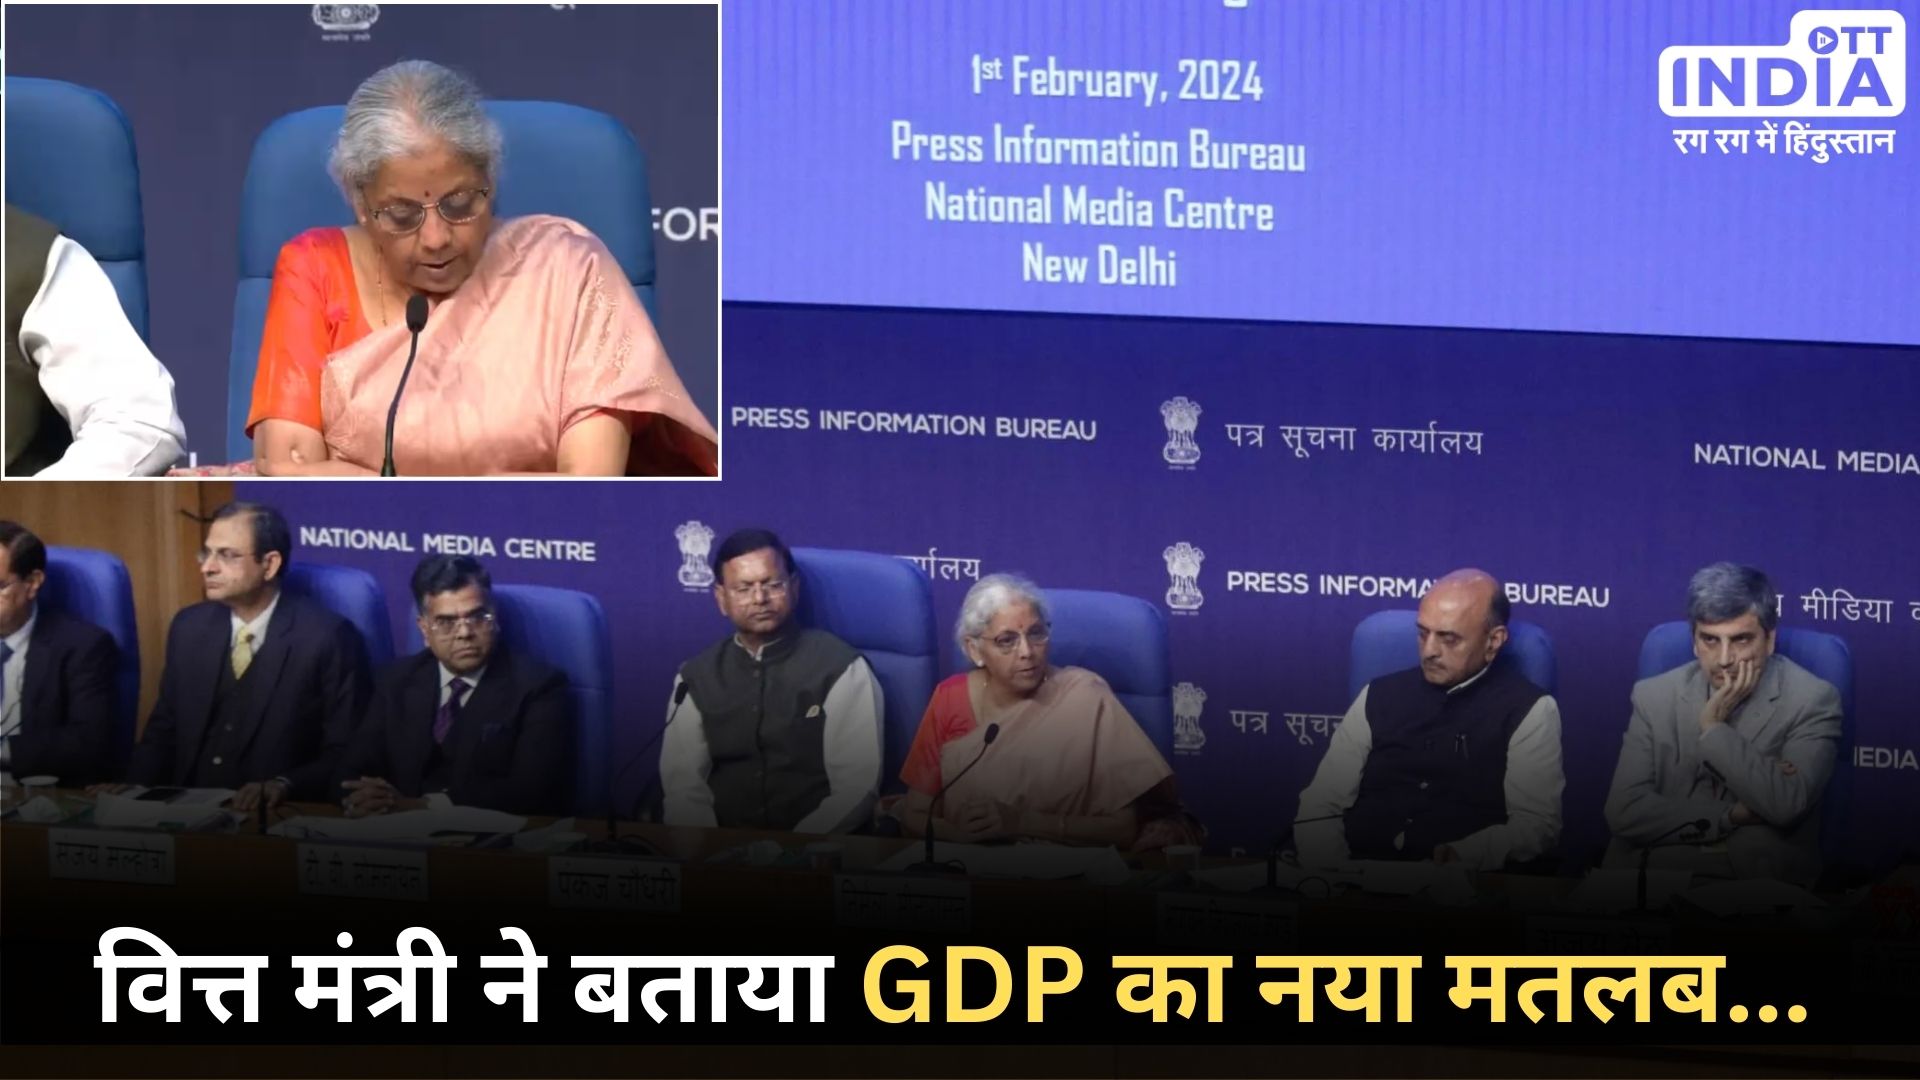 GDP: वित्त मंत्री ने समझाया जीडीपी का मतलब, कहा- लोग जी रहे हैं अच्छी जिंदगी…